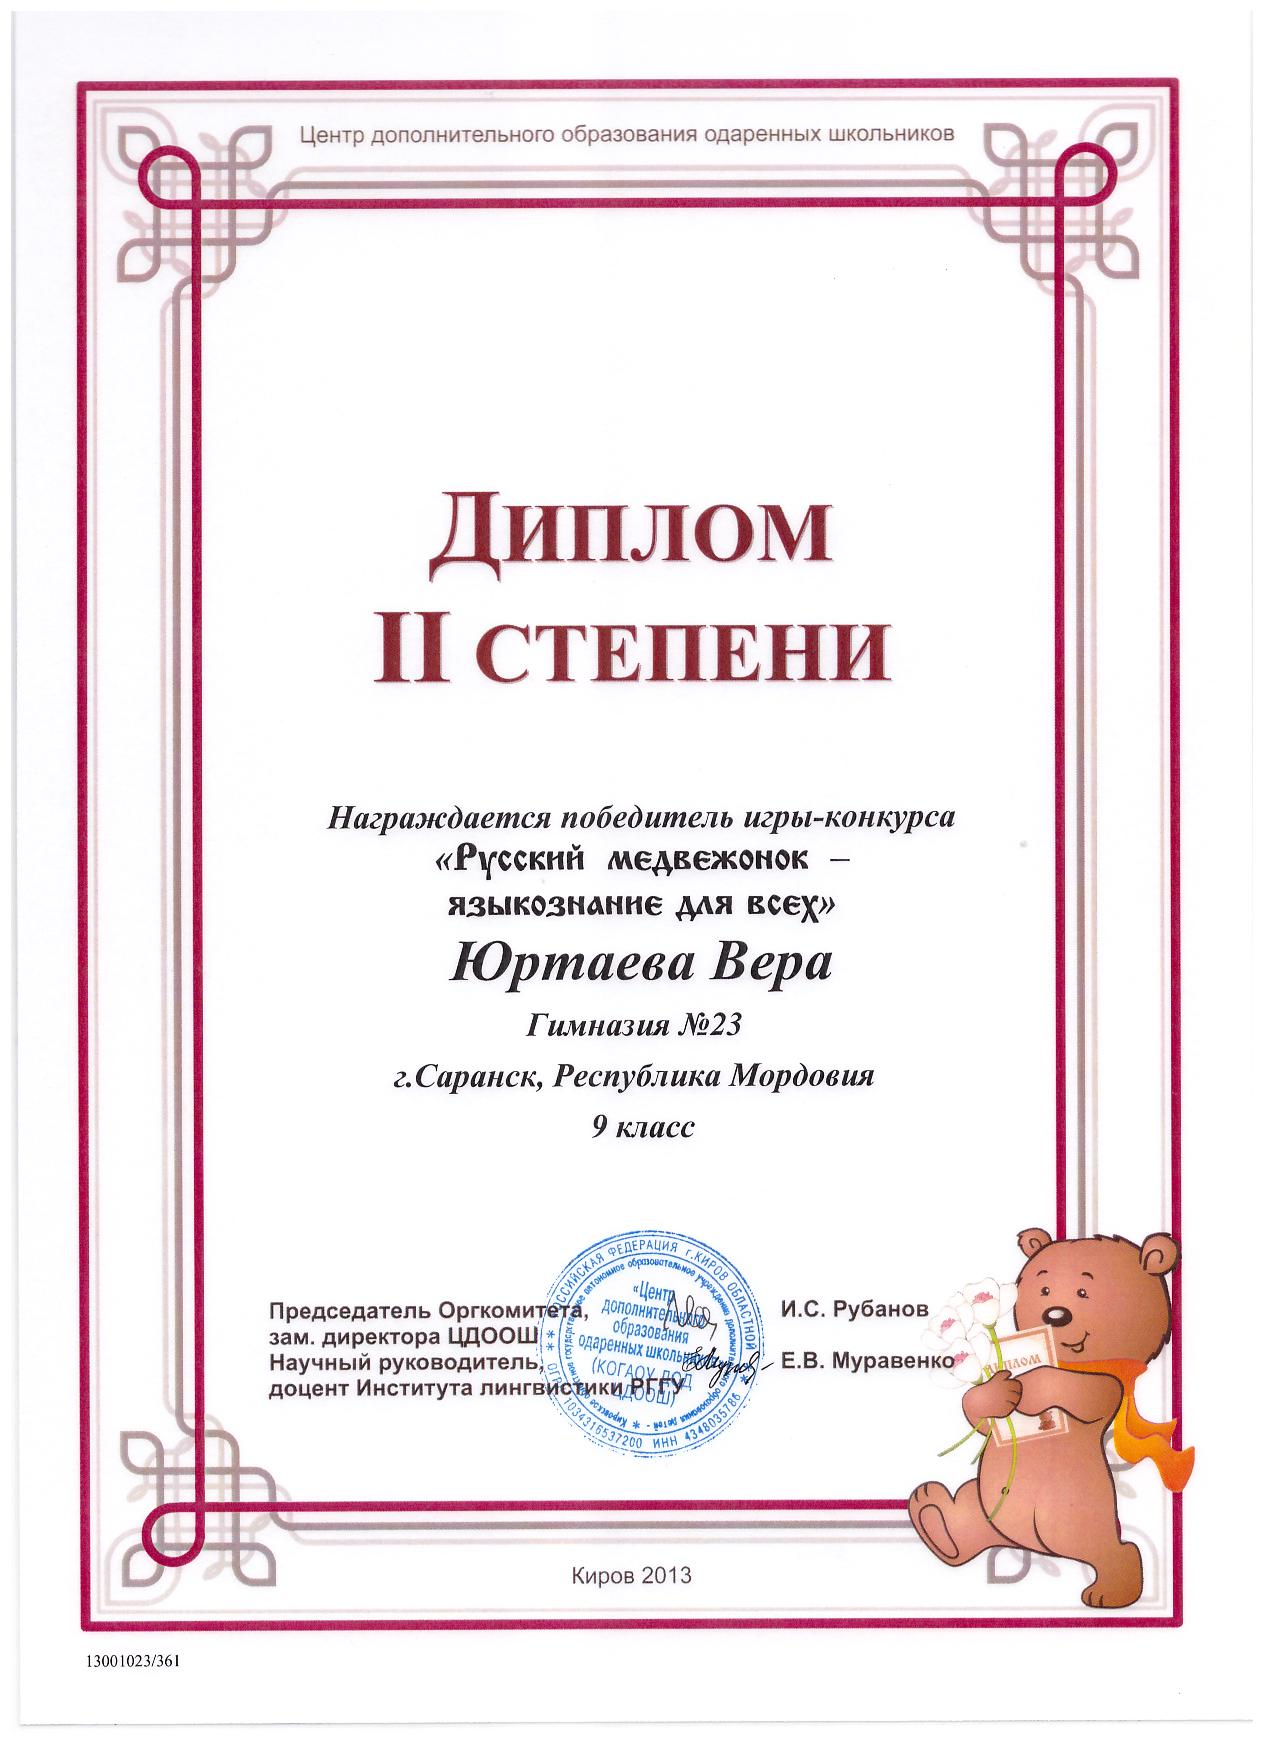 Личтностно – ориентированное обучение как один из путей реализации компетентностного подхода на урока русского языка и литературы.